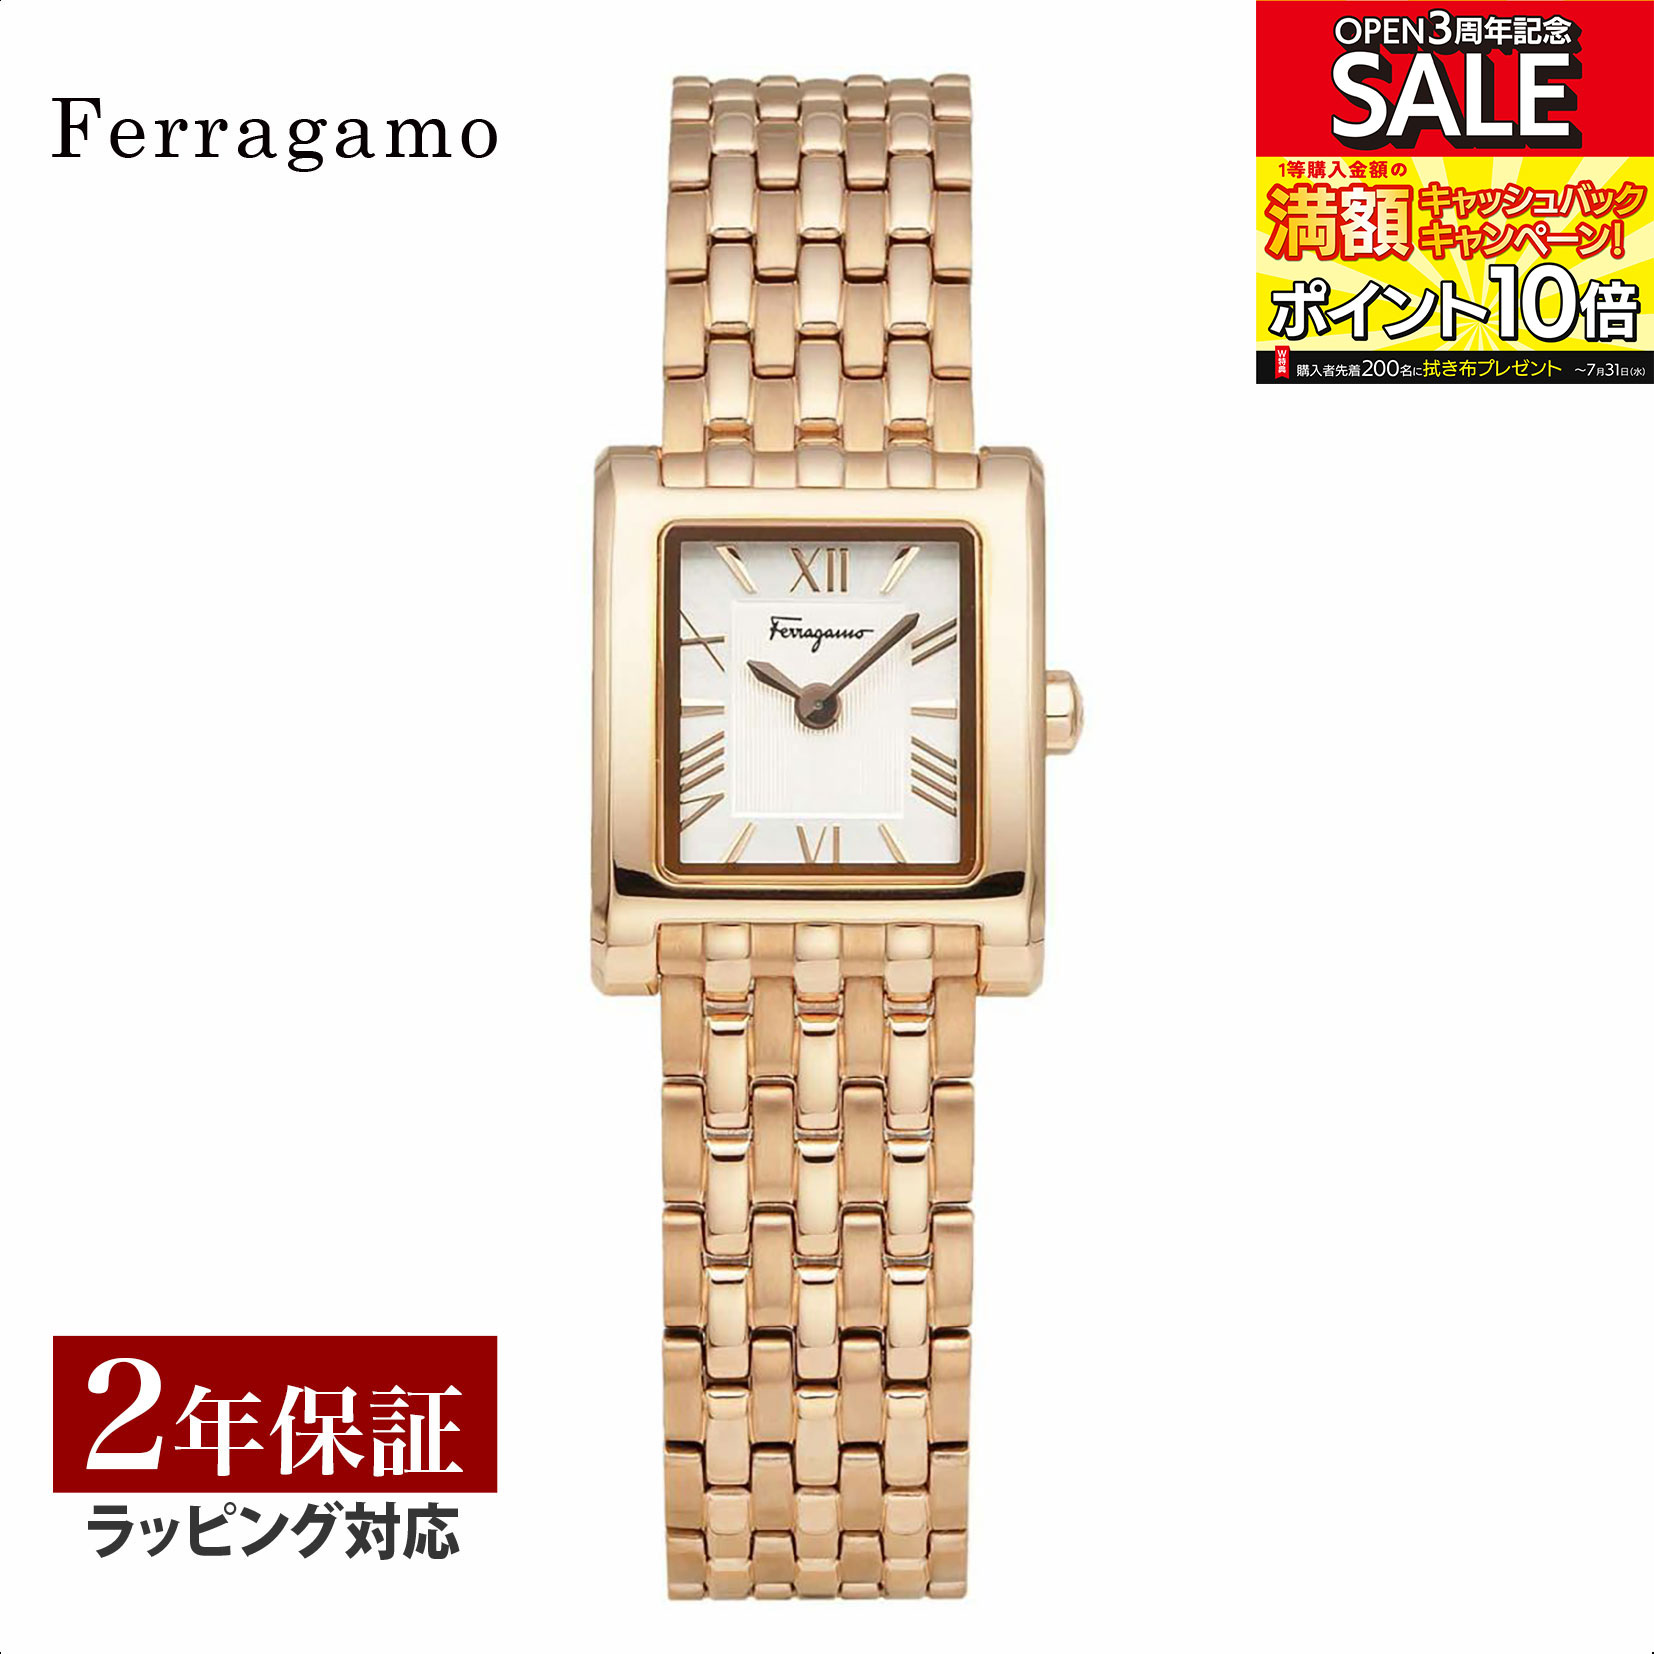 【当店限定】 フェラガモ Ferragamo レディース 時計 LEGACY レガシー クォーツ ピンクゴールド SFRR00222 時計 腕時計 高級腕時計 ブランド